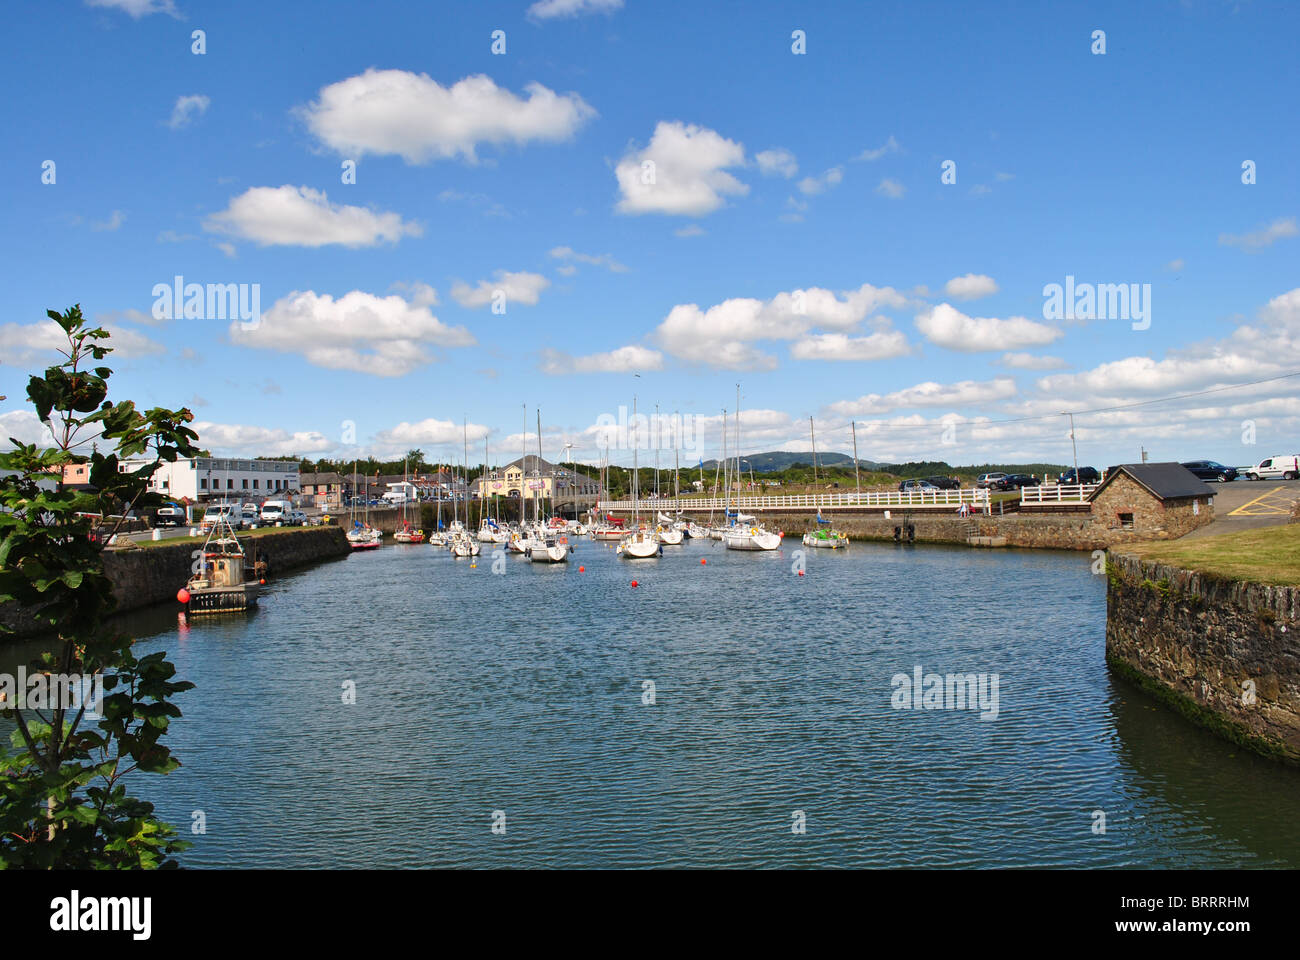 Dans la rivière ville cour co wexford avec fluffy clouds et bateaux Banque D'Images